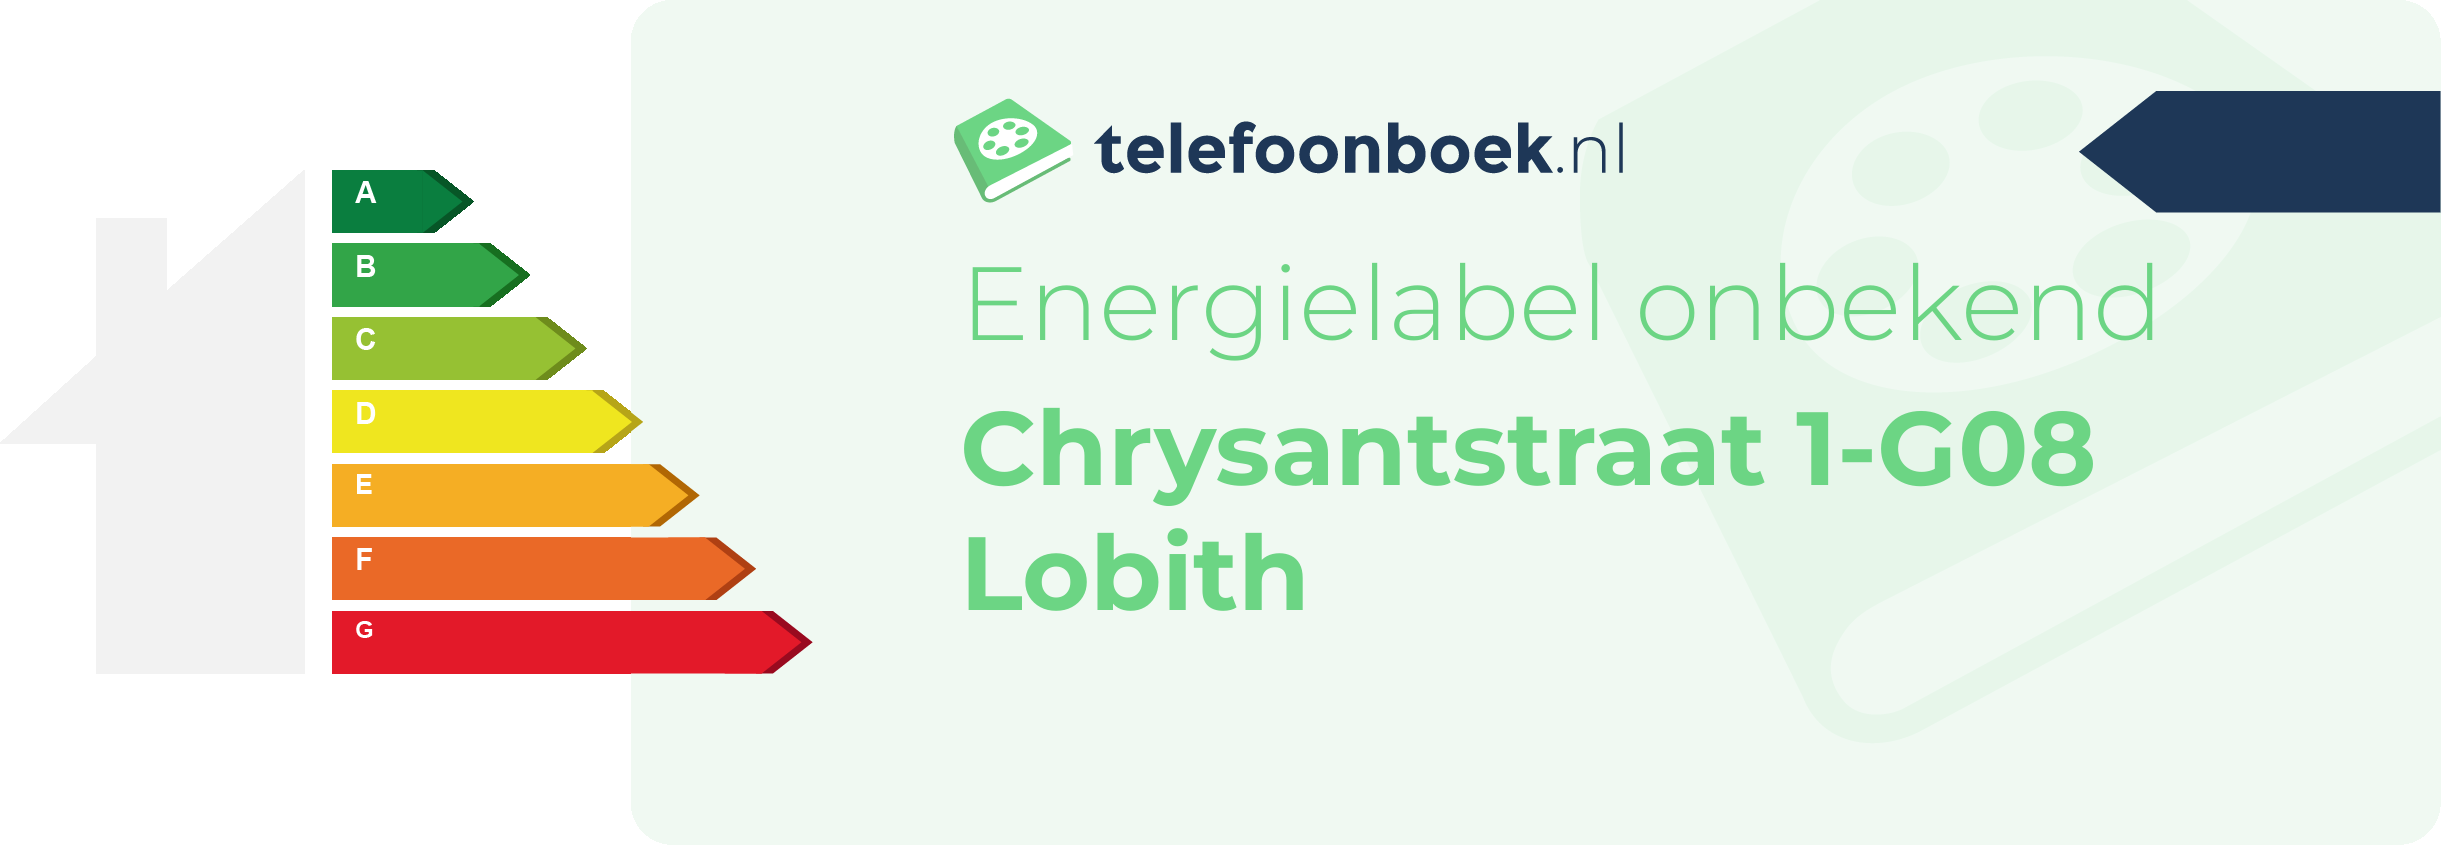 Energielabel Chrysantstraat 1-G08 Lobith